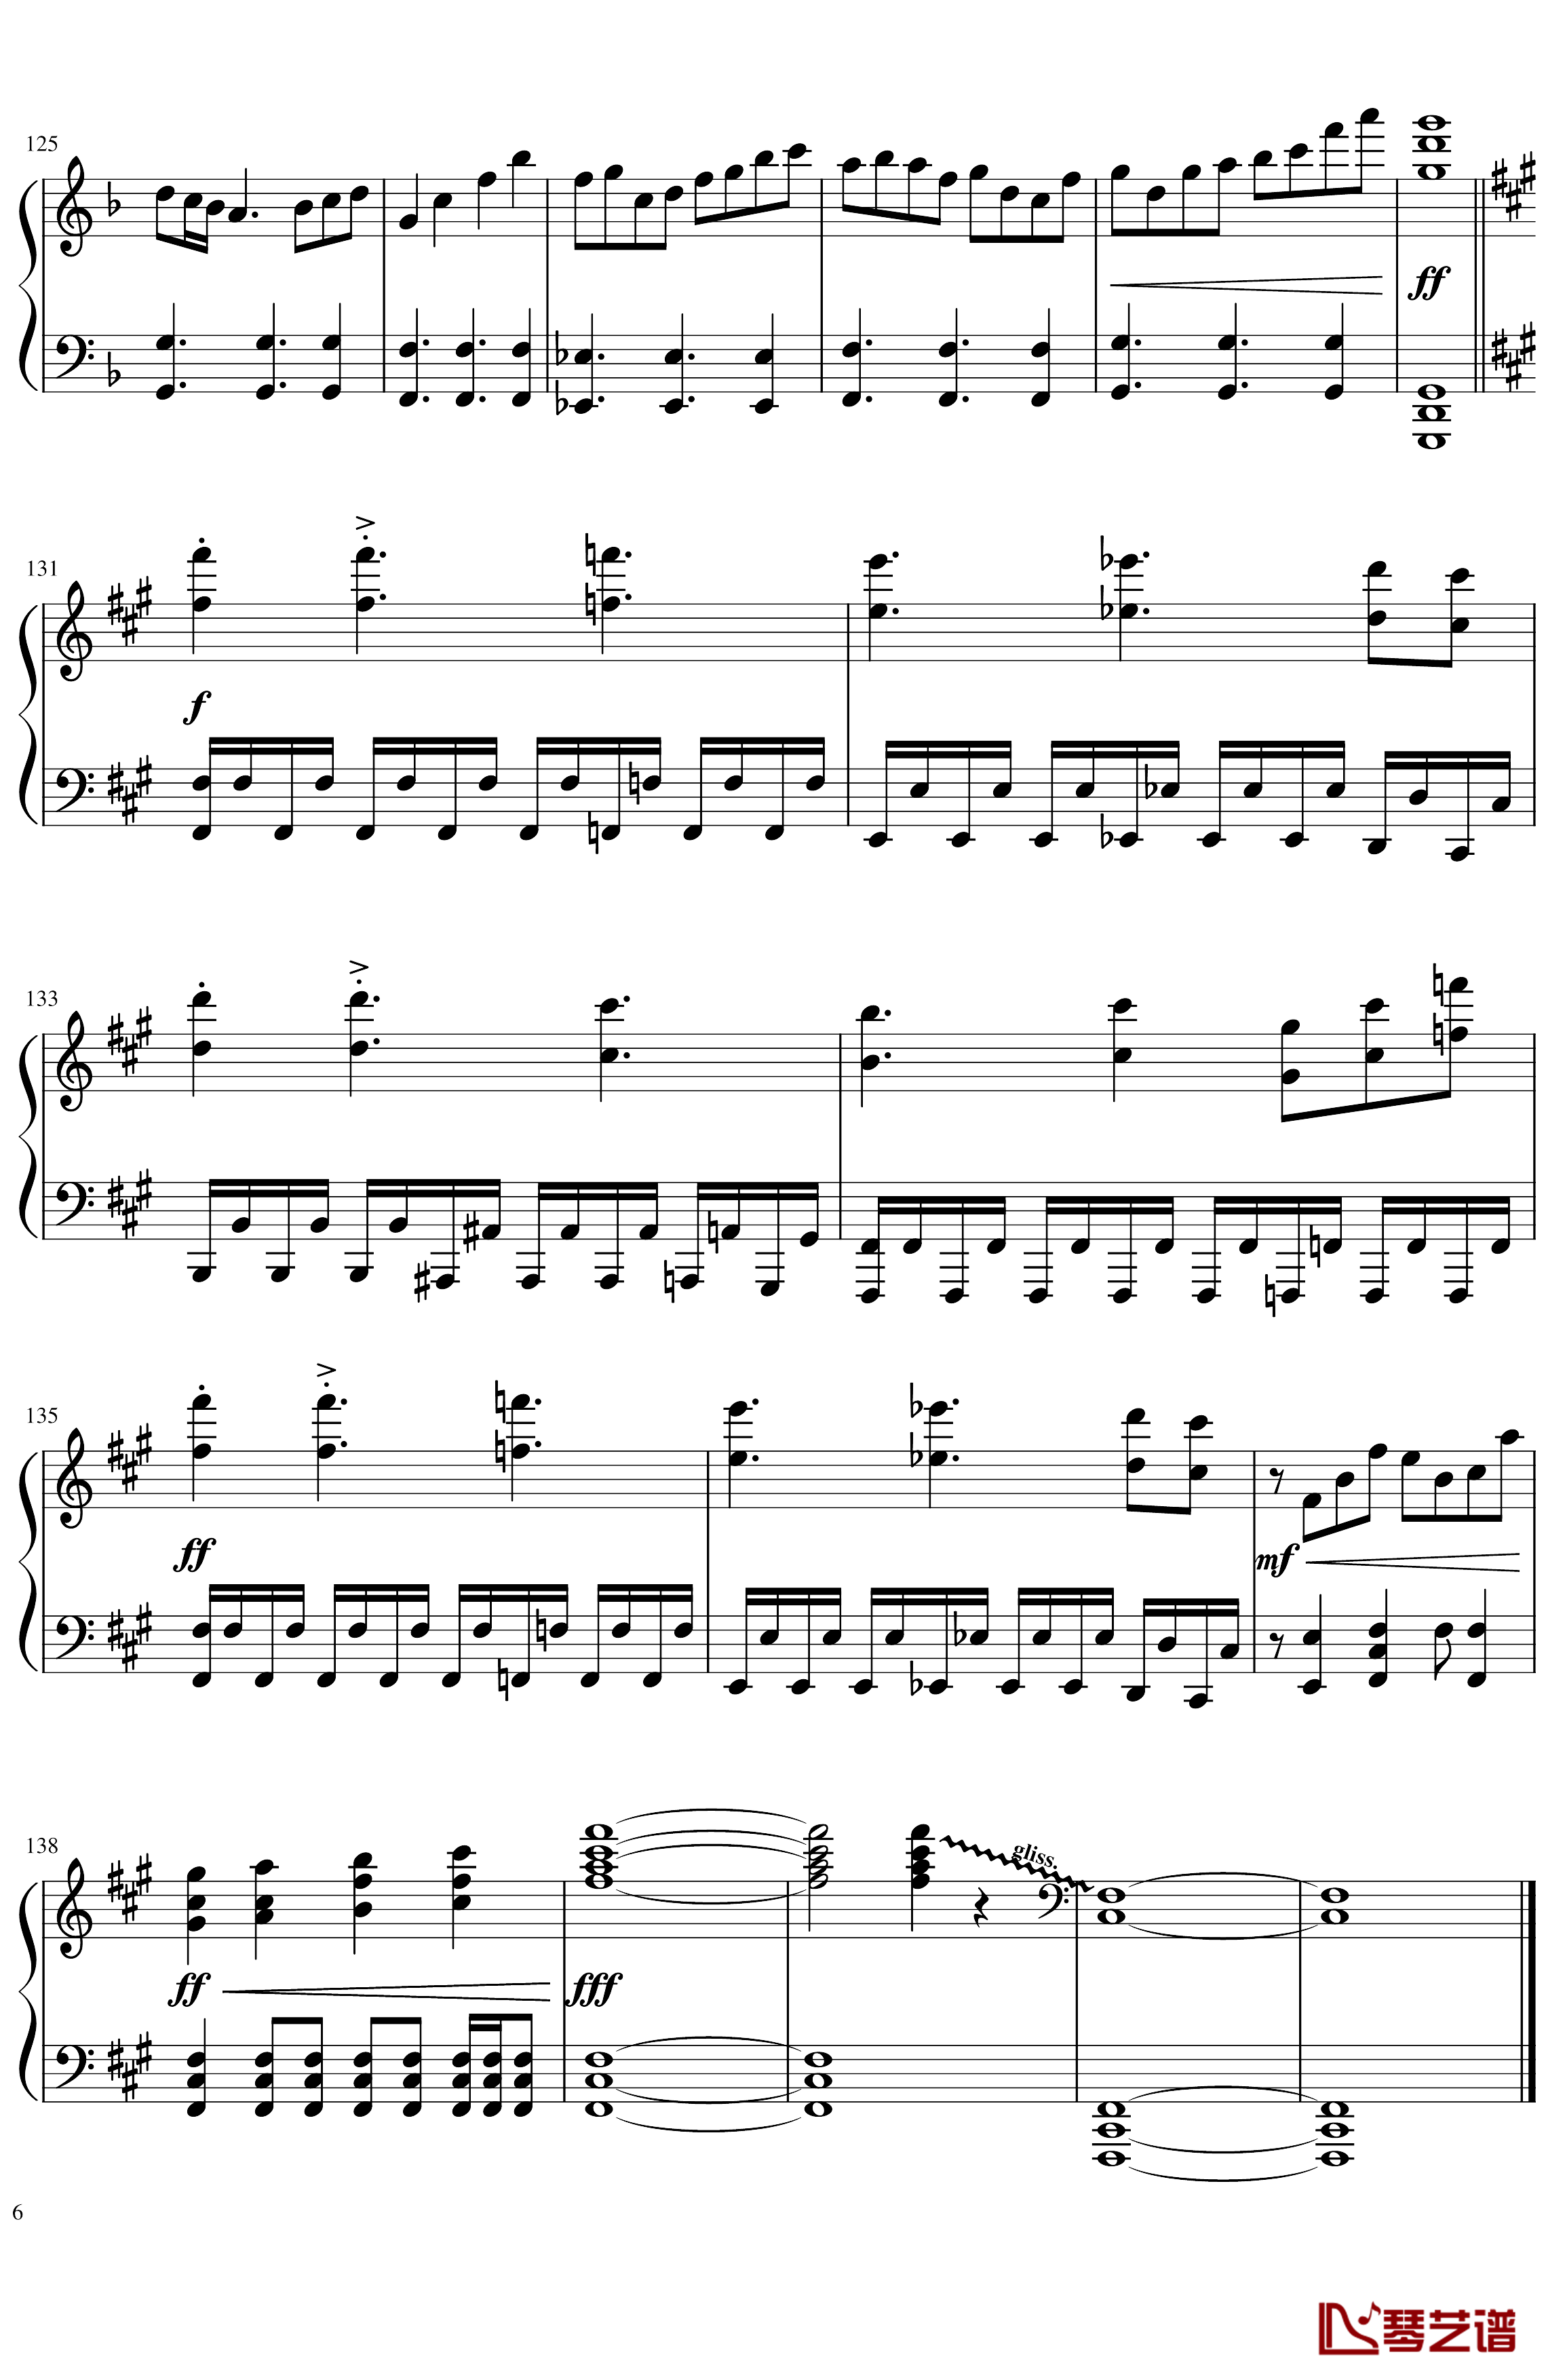 ソロモンの白椿钢琴谱-交响乐转钢琴版-碧蓝航线